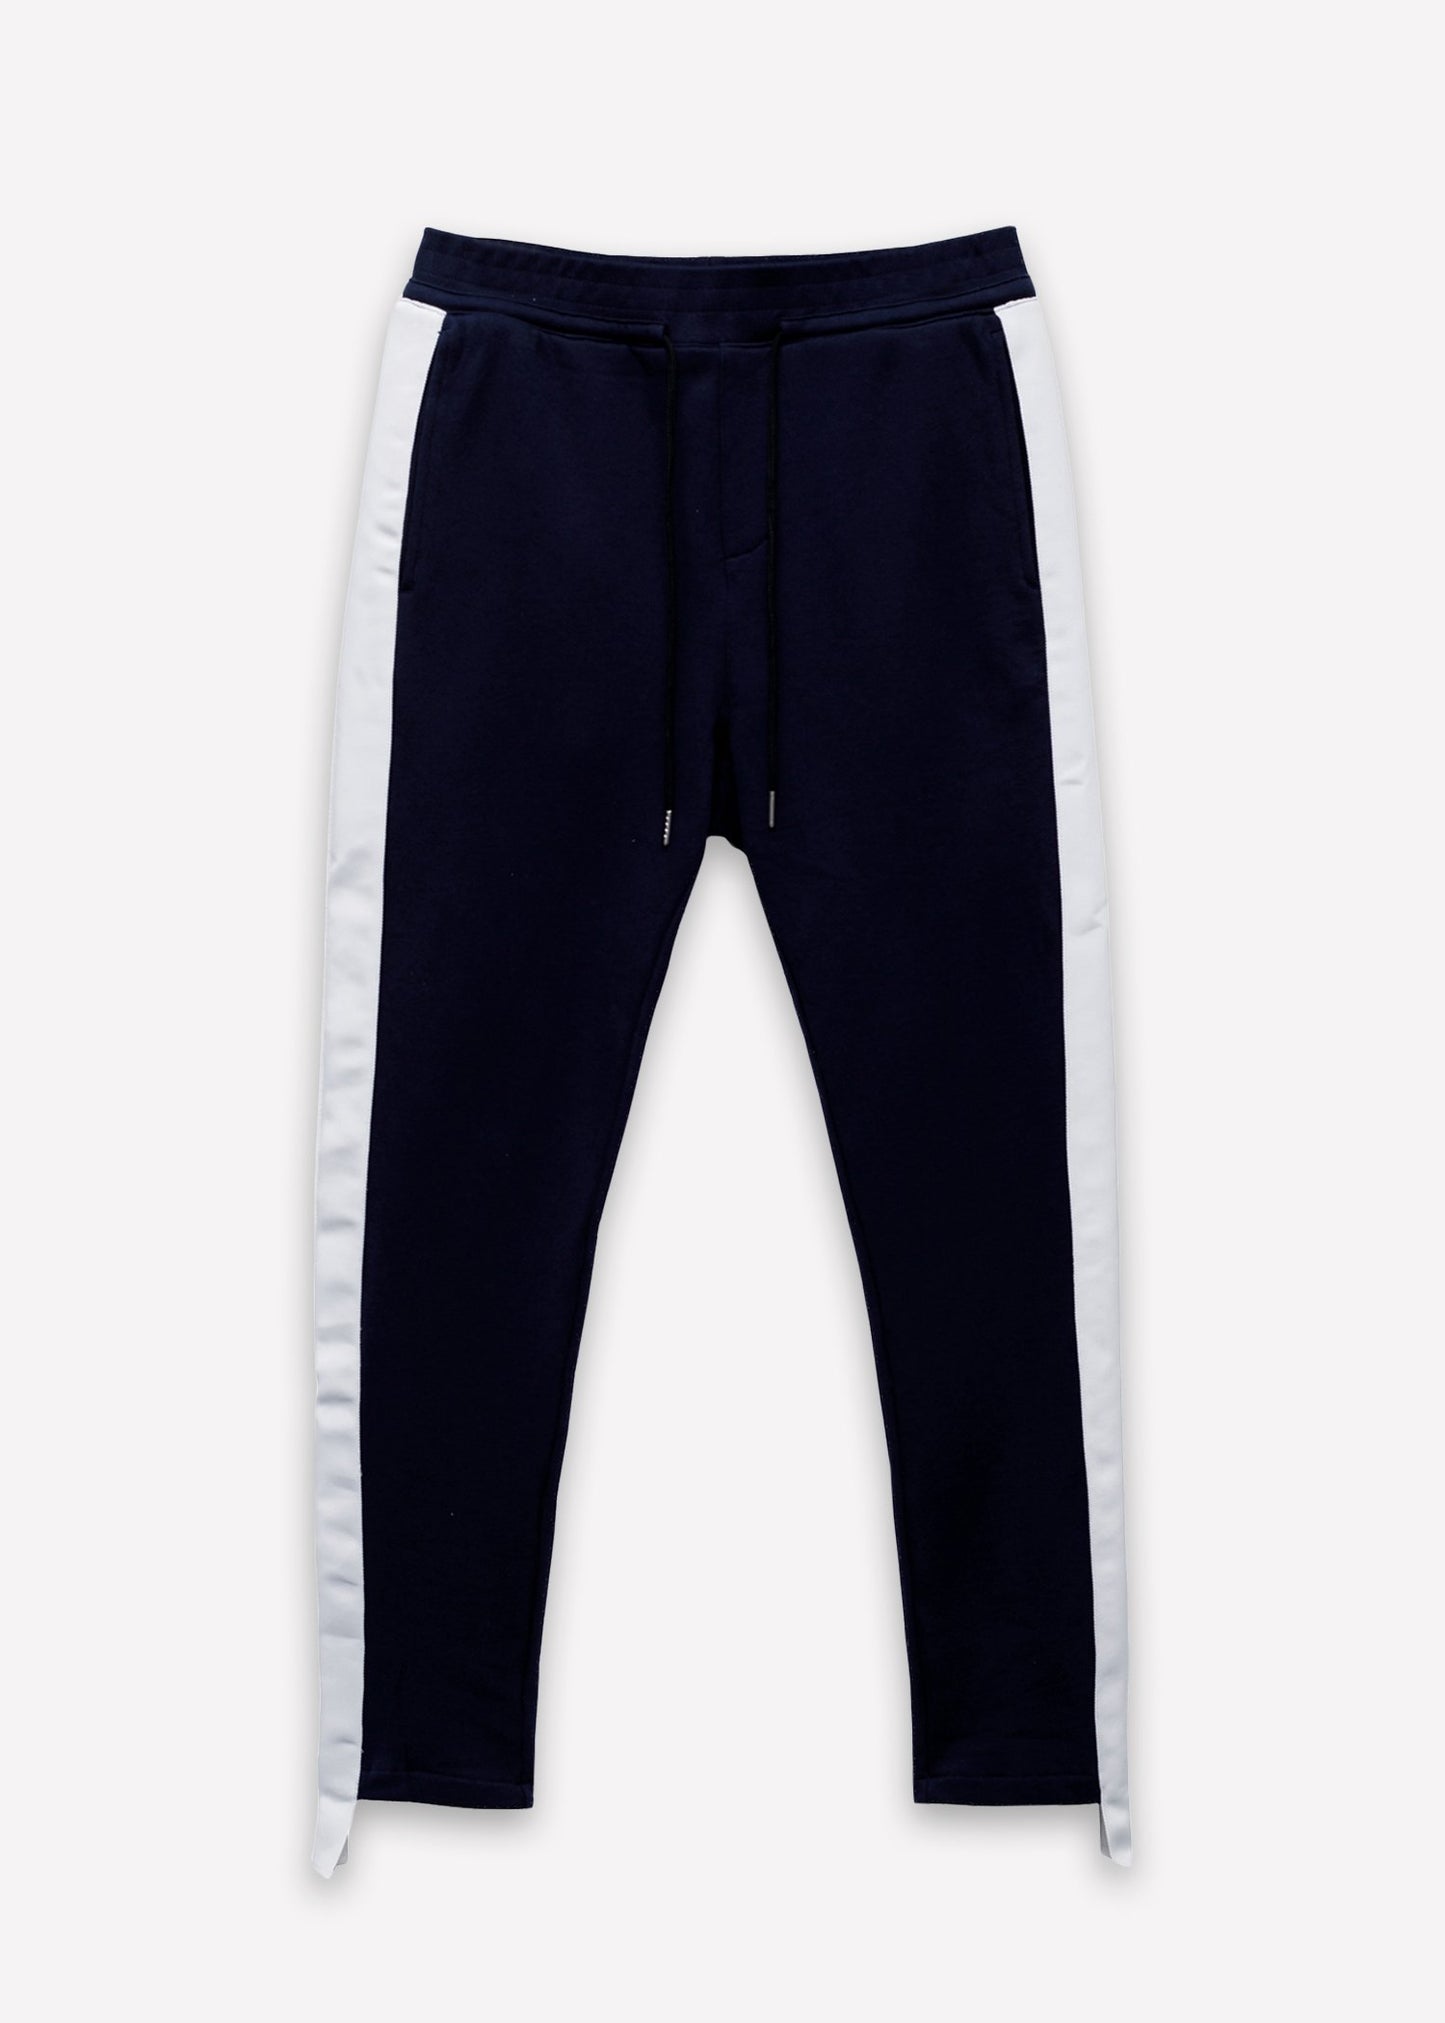 Konus Men's Sweatpants w/ Side Stripes in Navy - LuxeSavo